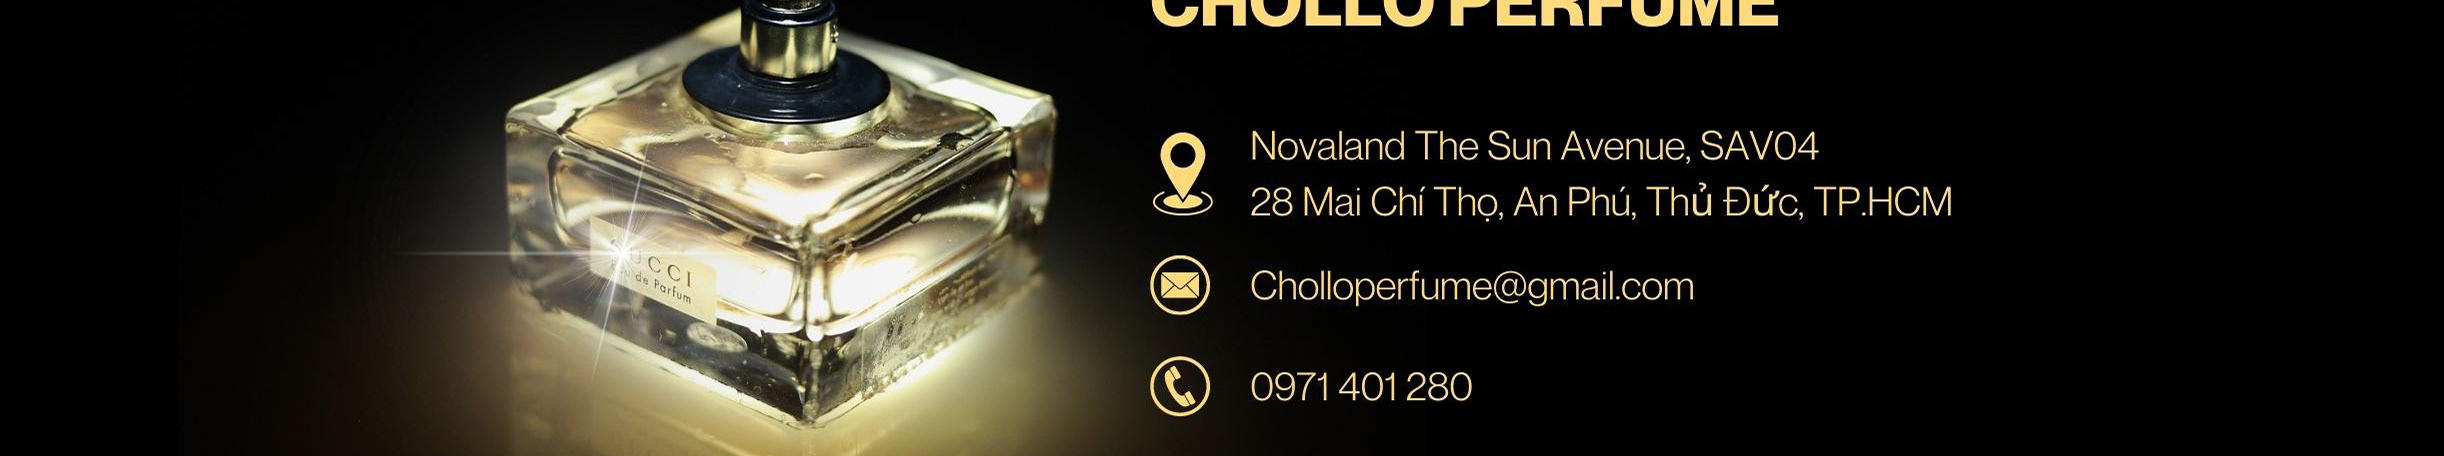 Chollo Perfume のプロファイルバナー